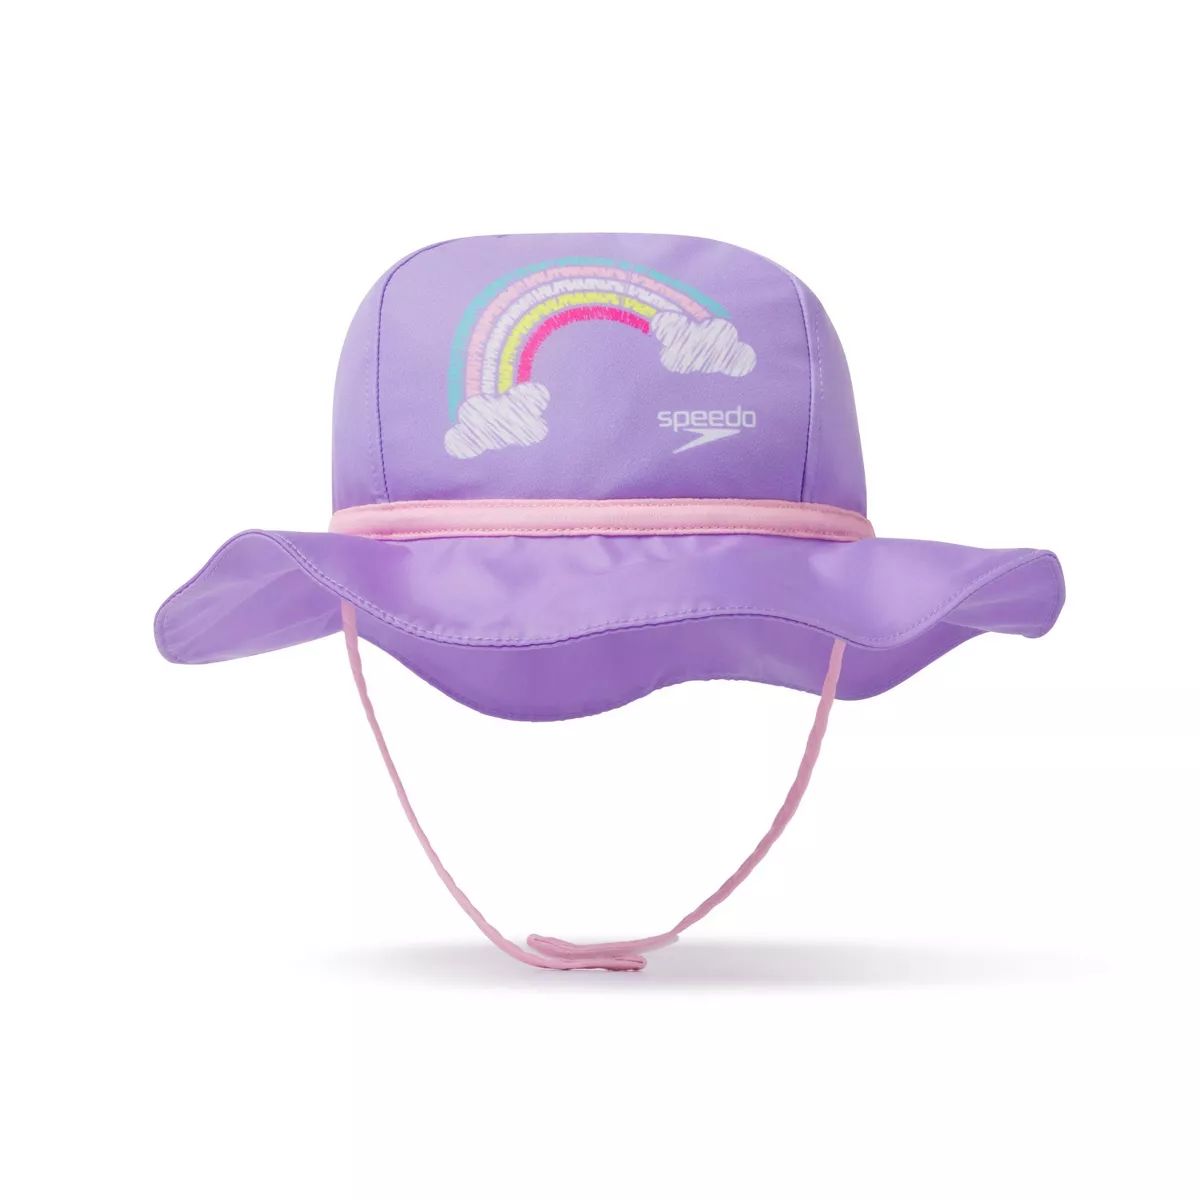 Speedo Toddler Bucket Hat - Rainbow | Target